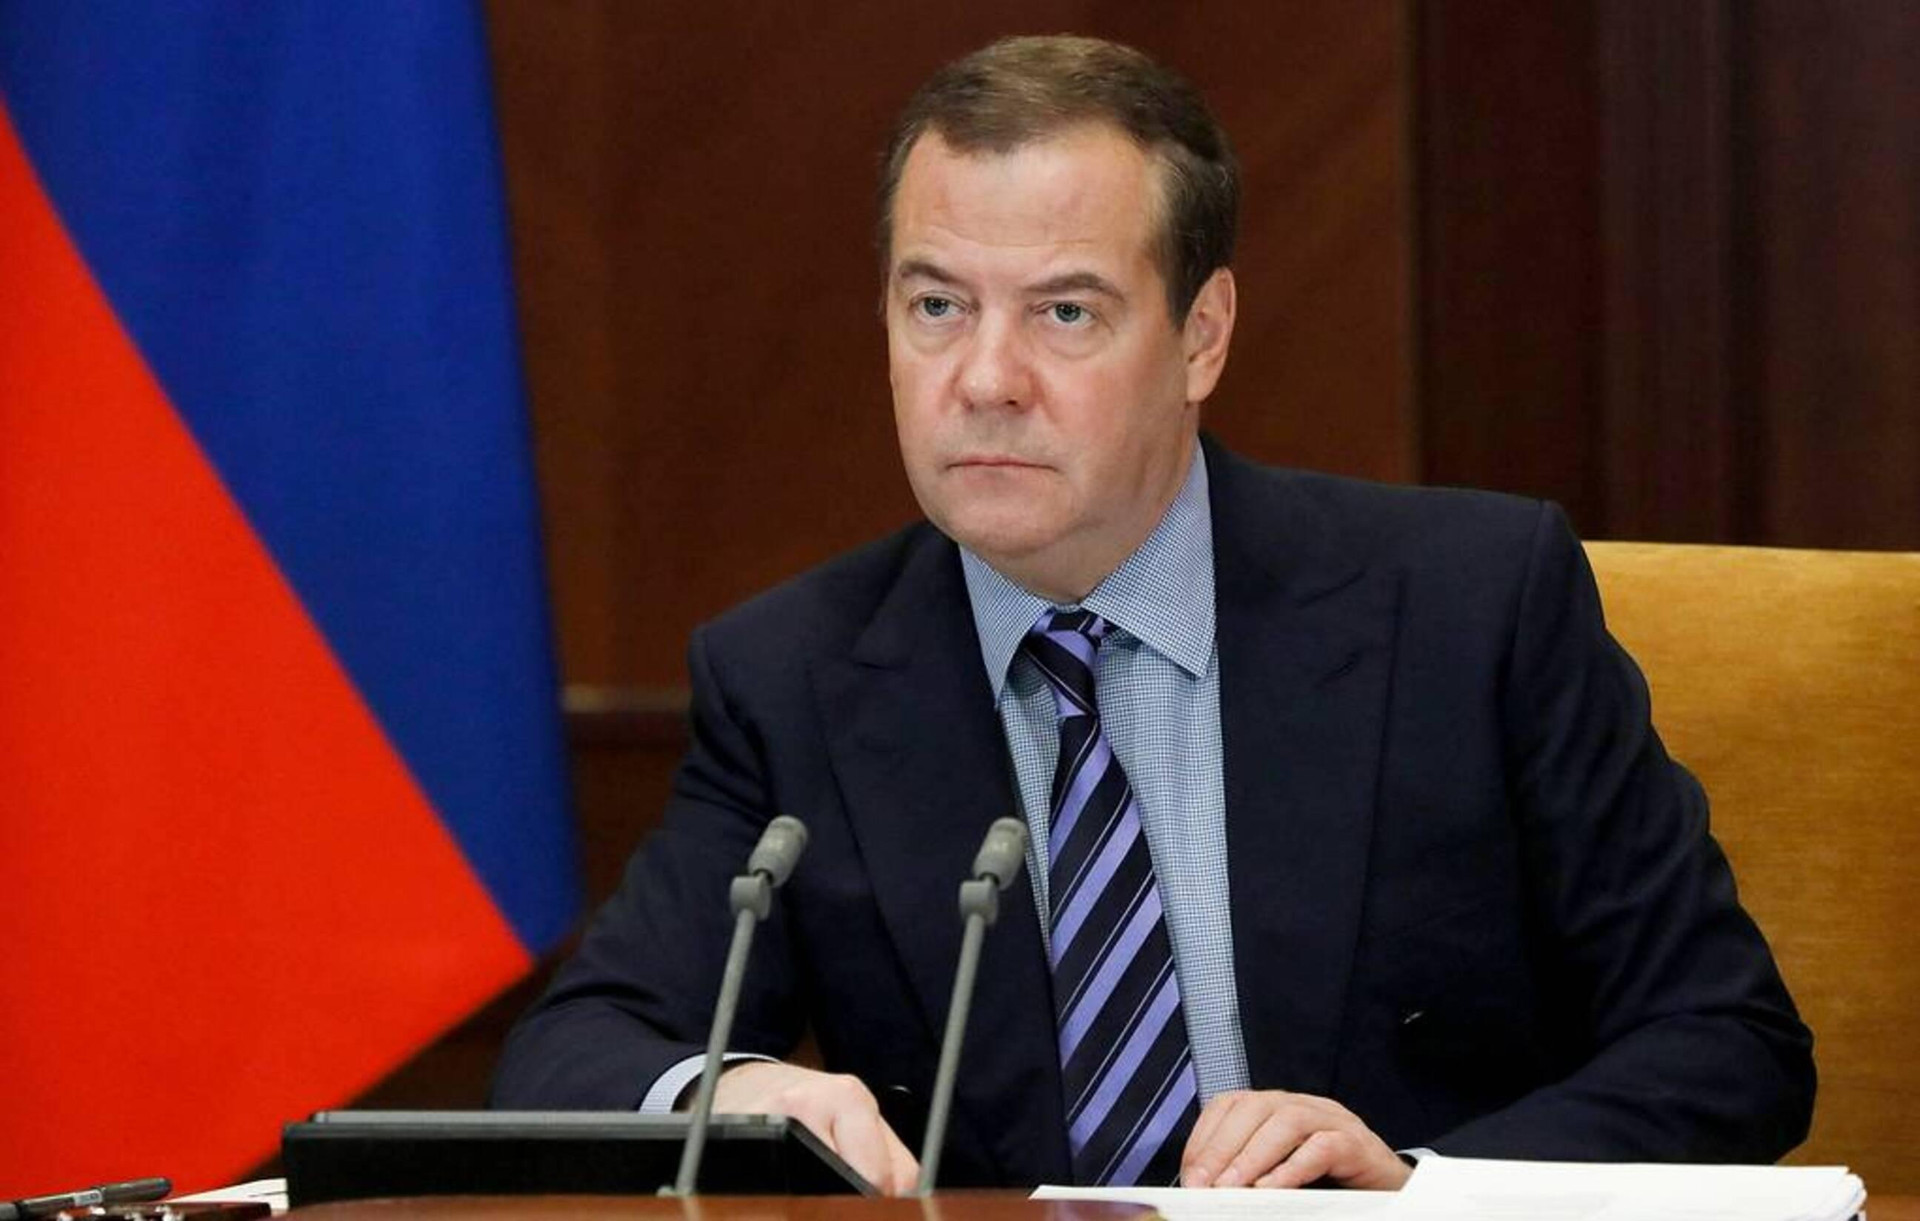 Ông Medvedev: Gây hấn với cường quốc hạt nhân là điều điên rồ - 1